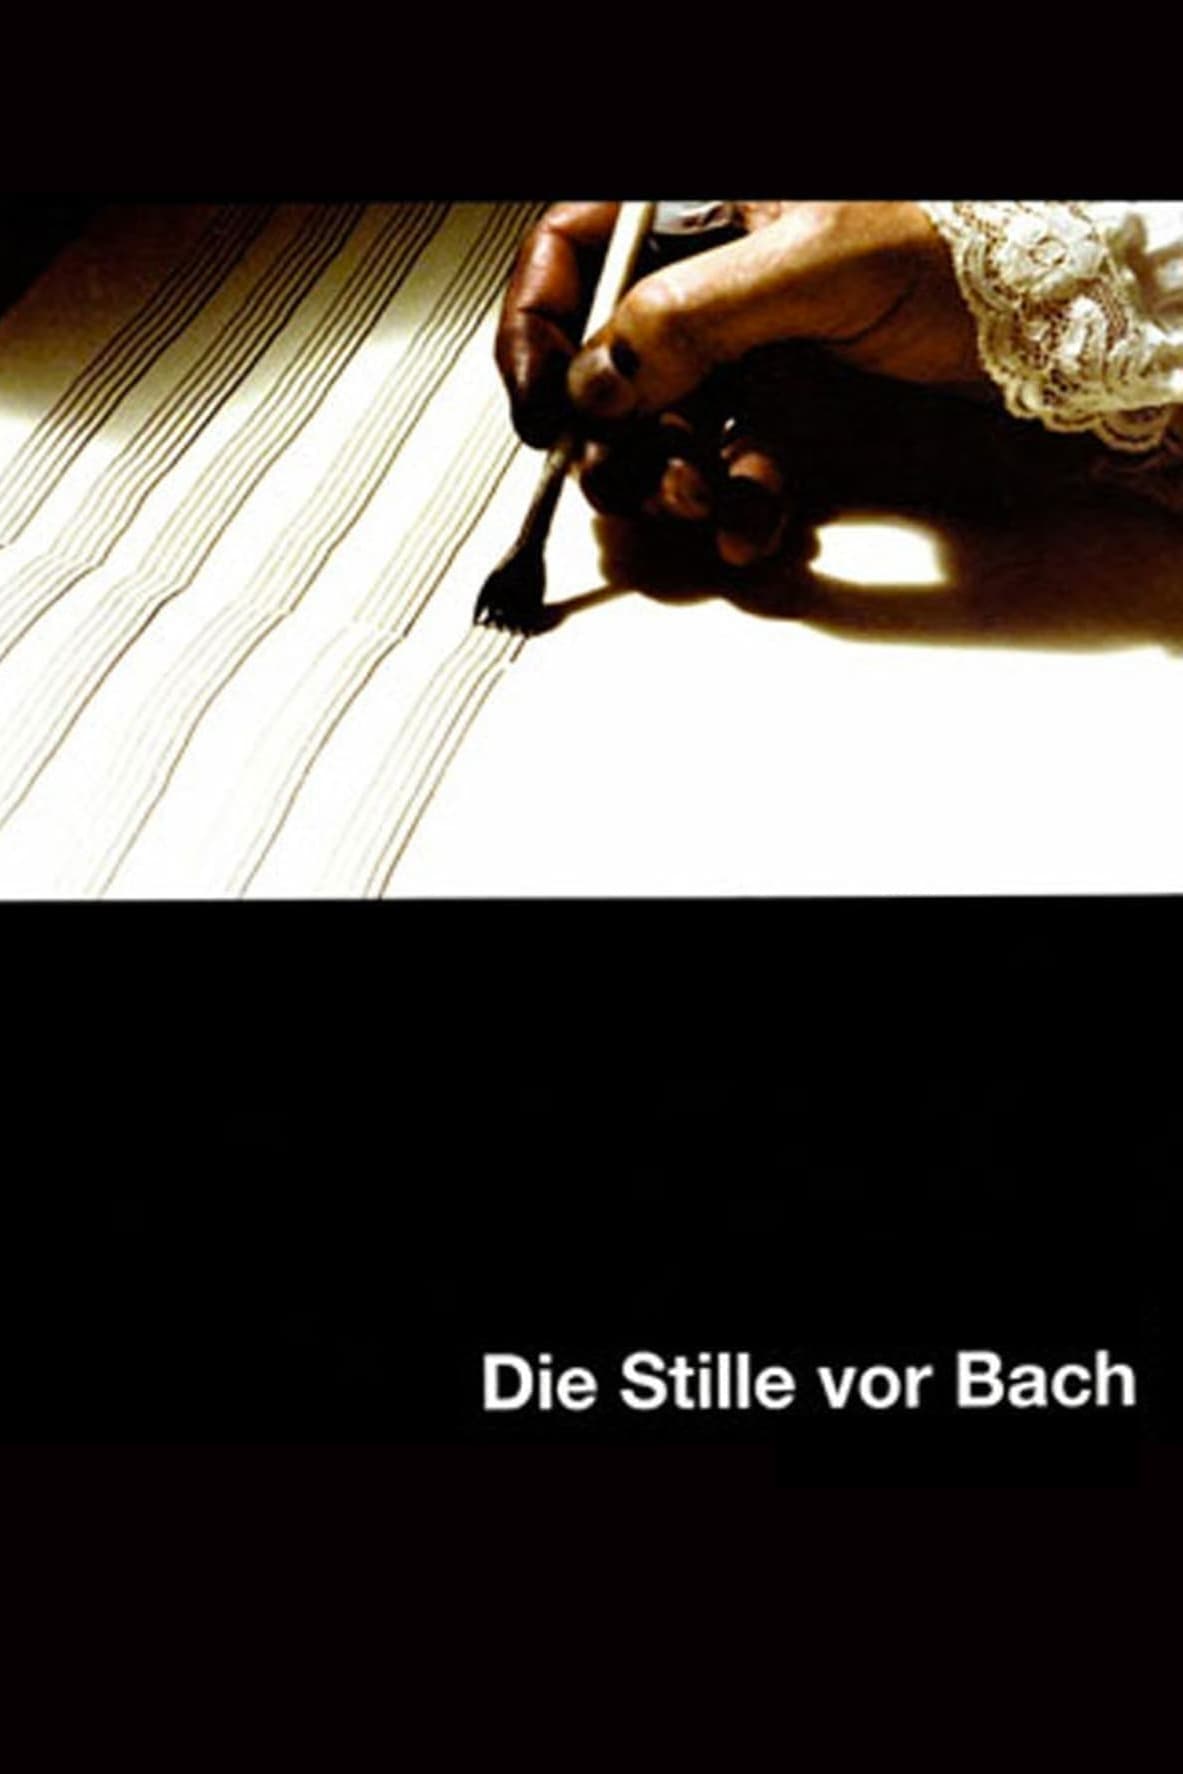 Die Stille vor Bach (2007)